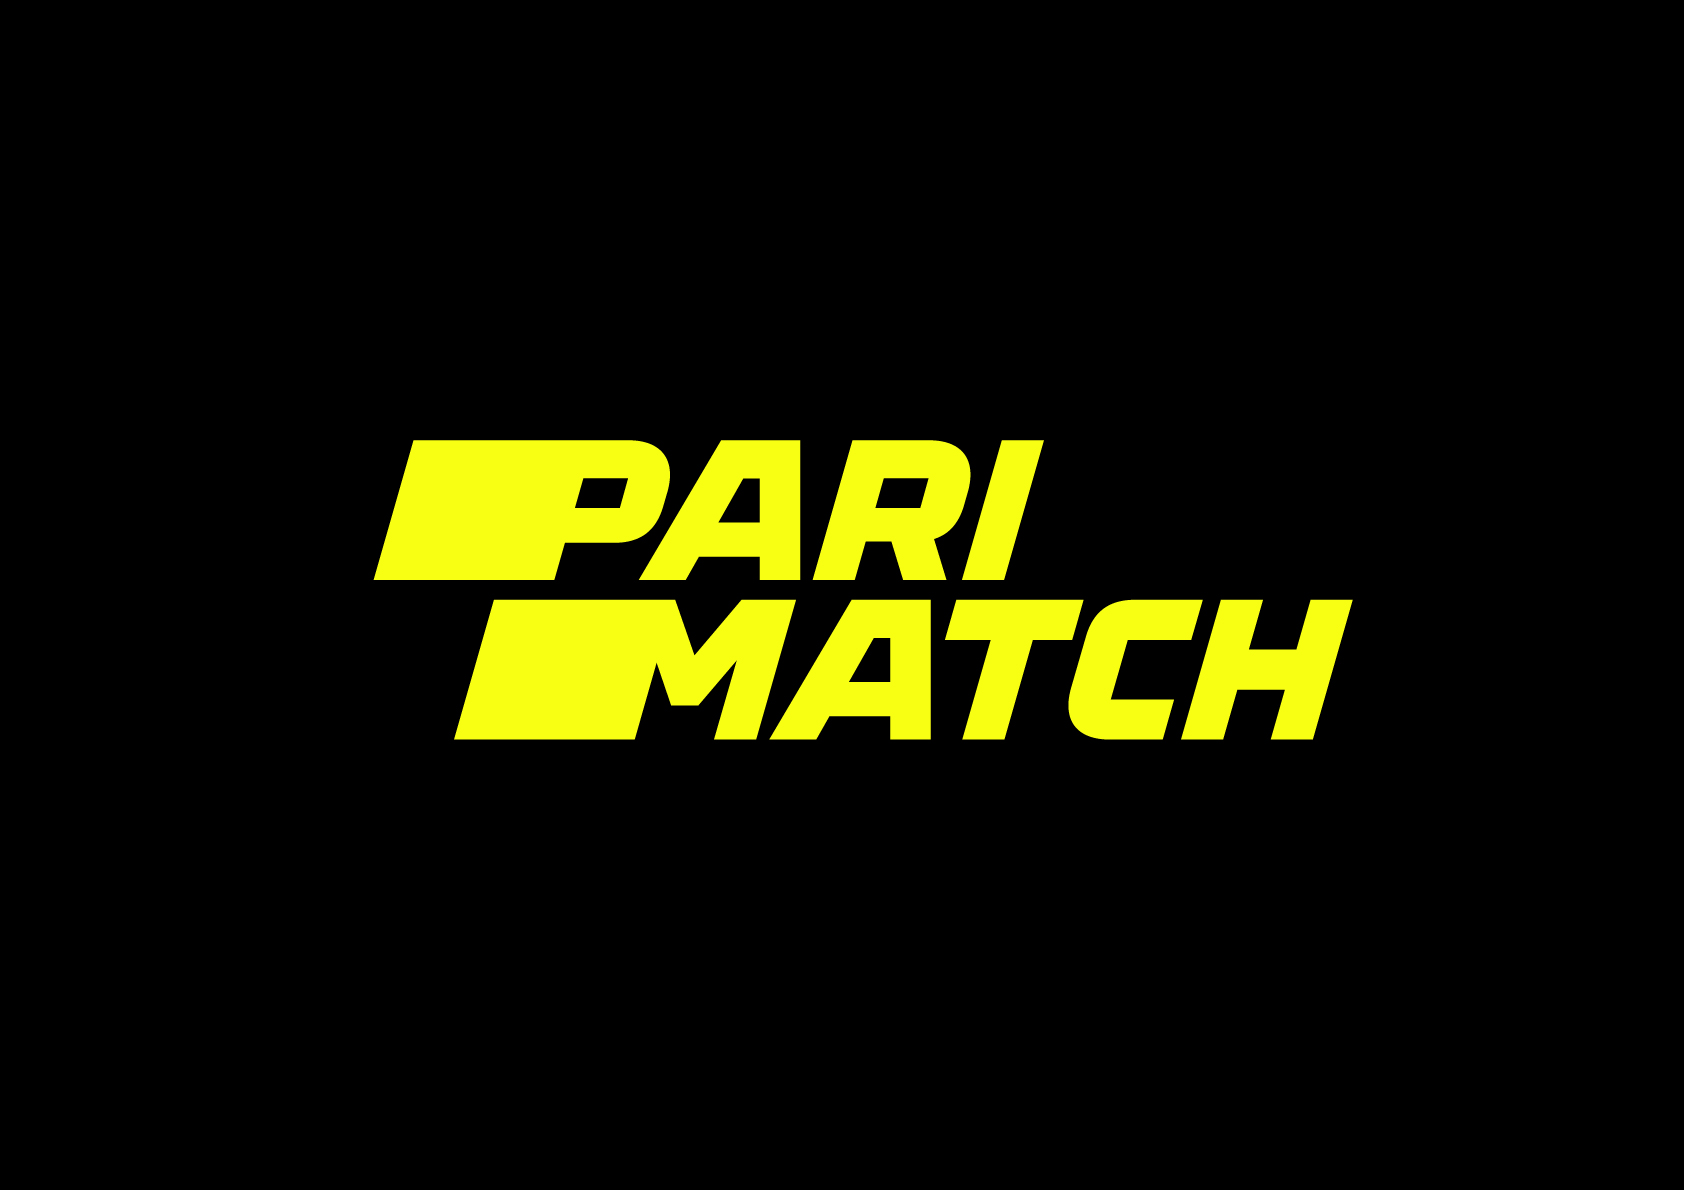 Parimatch станет официальным партнёром EPICENTER CS:GO 2019